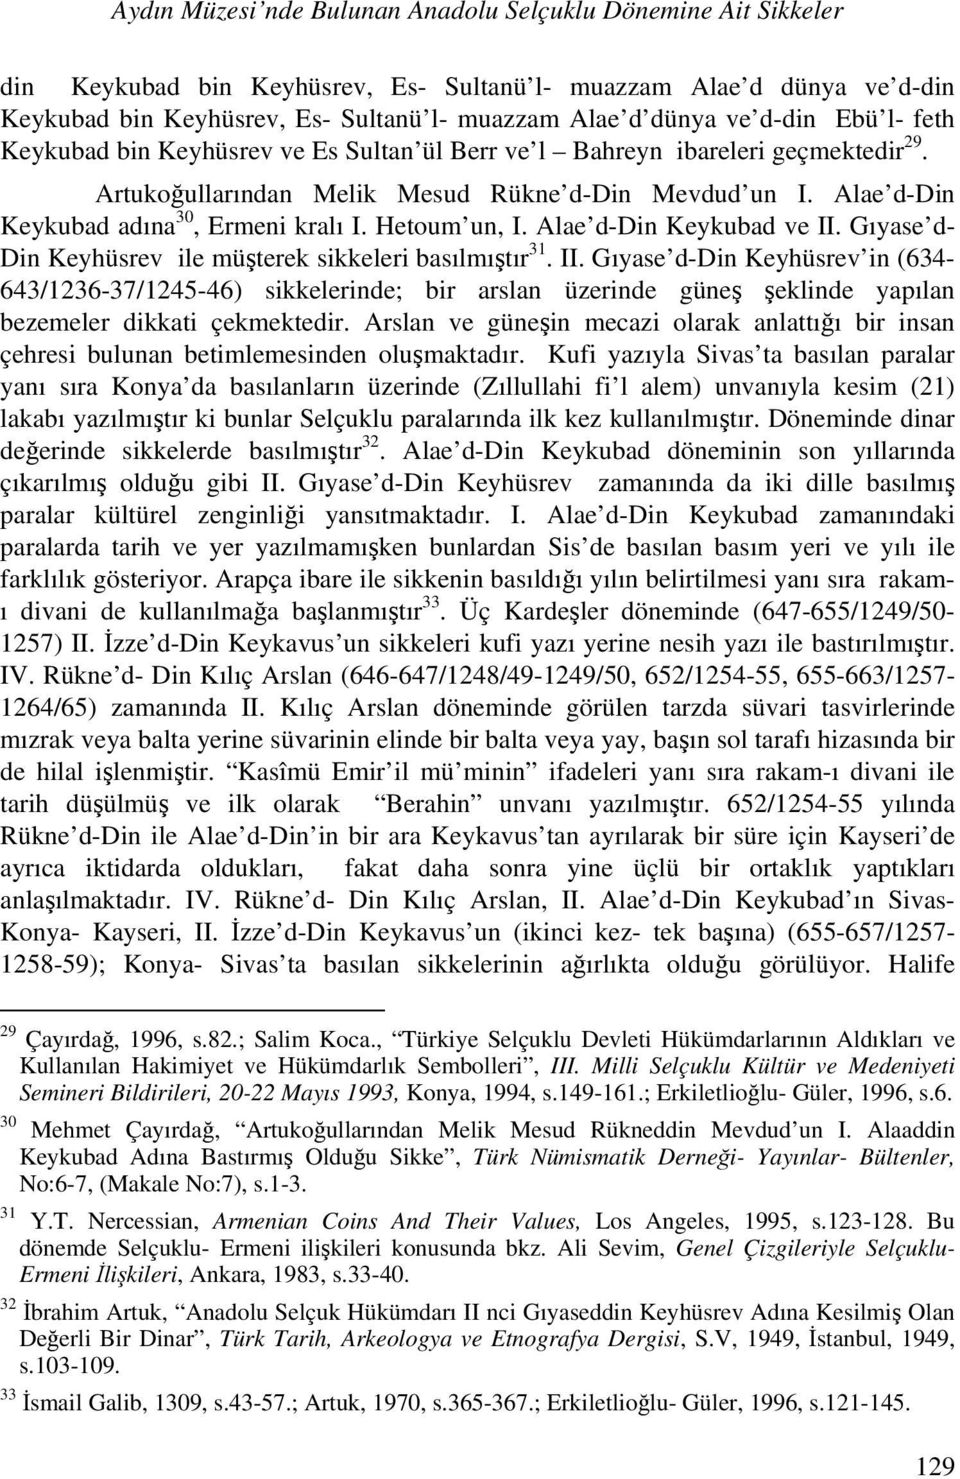 Alae d-din Keykubad adına 30, Ermeni kralı I. Hetoum un, I. Alae d-din Keykubad ve II.